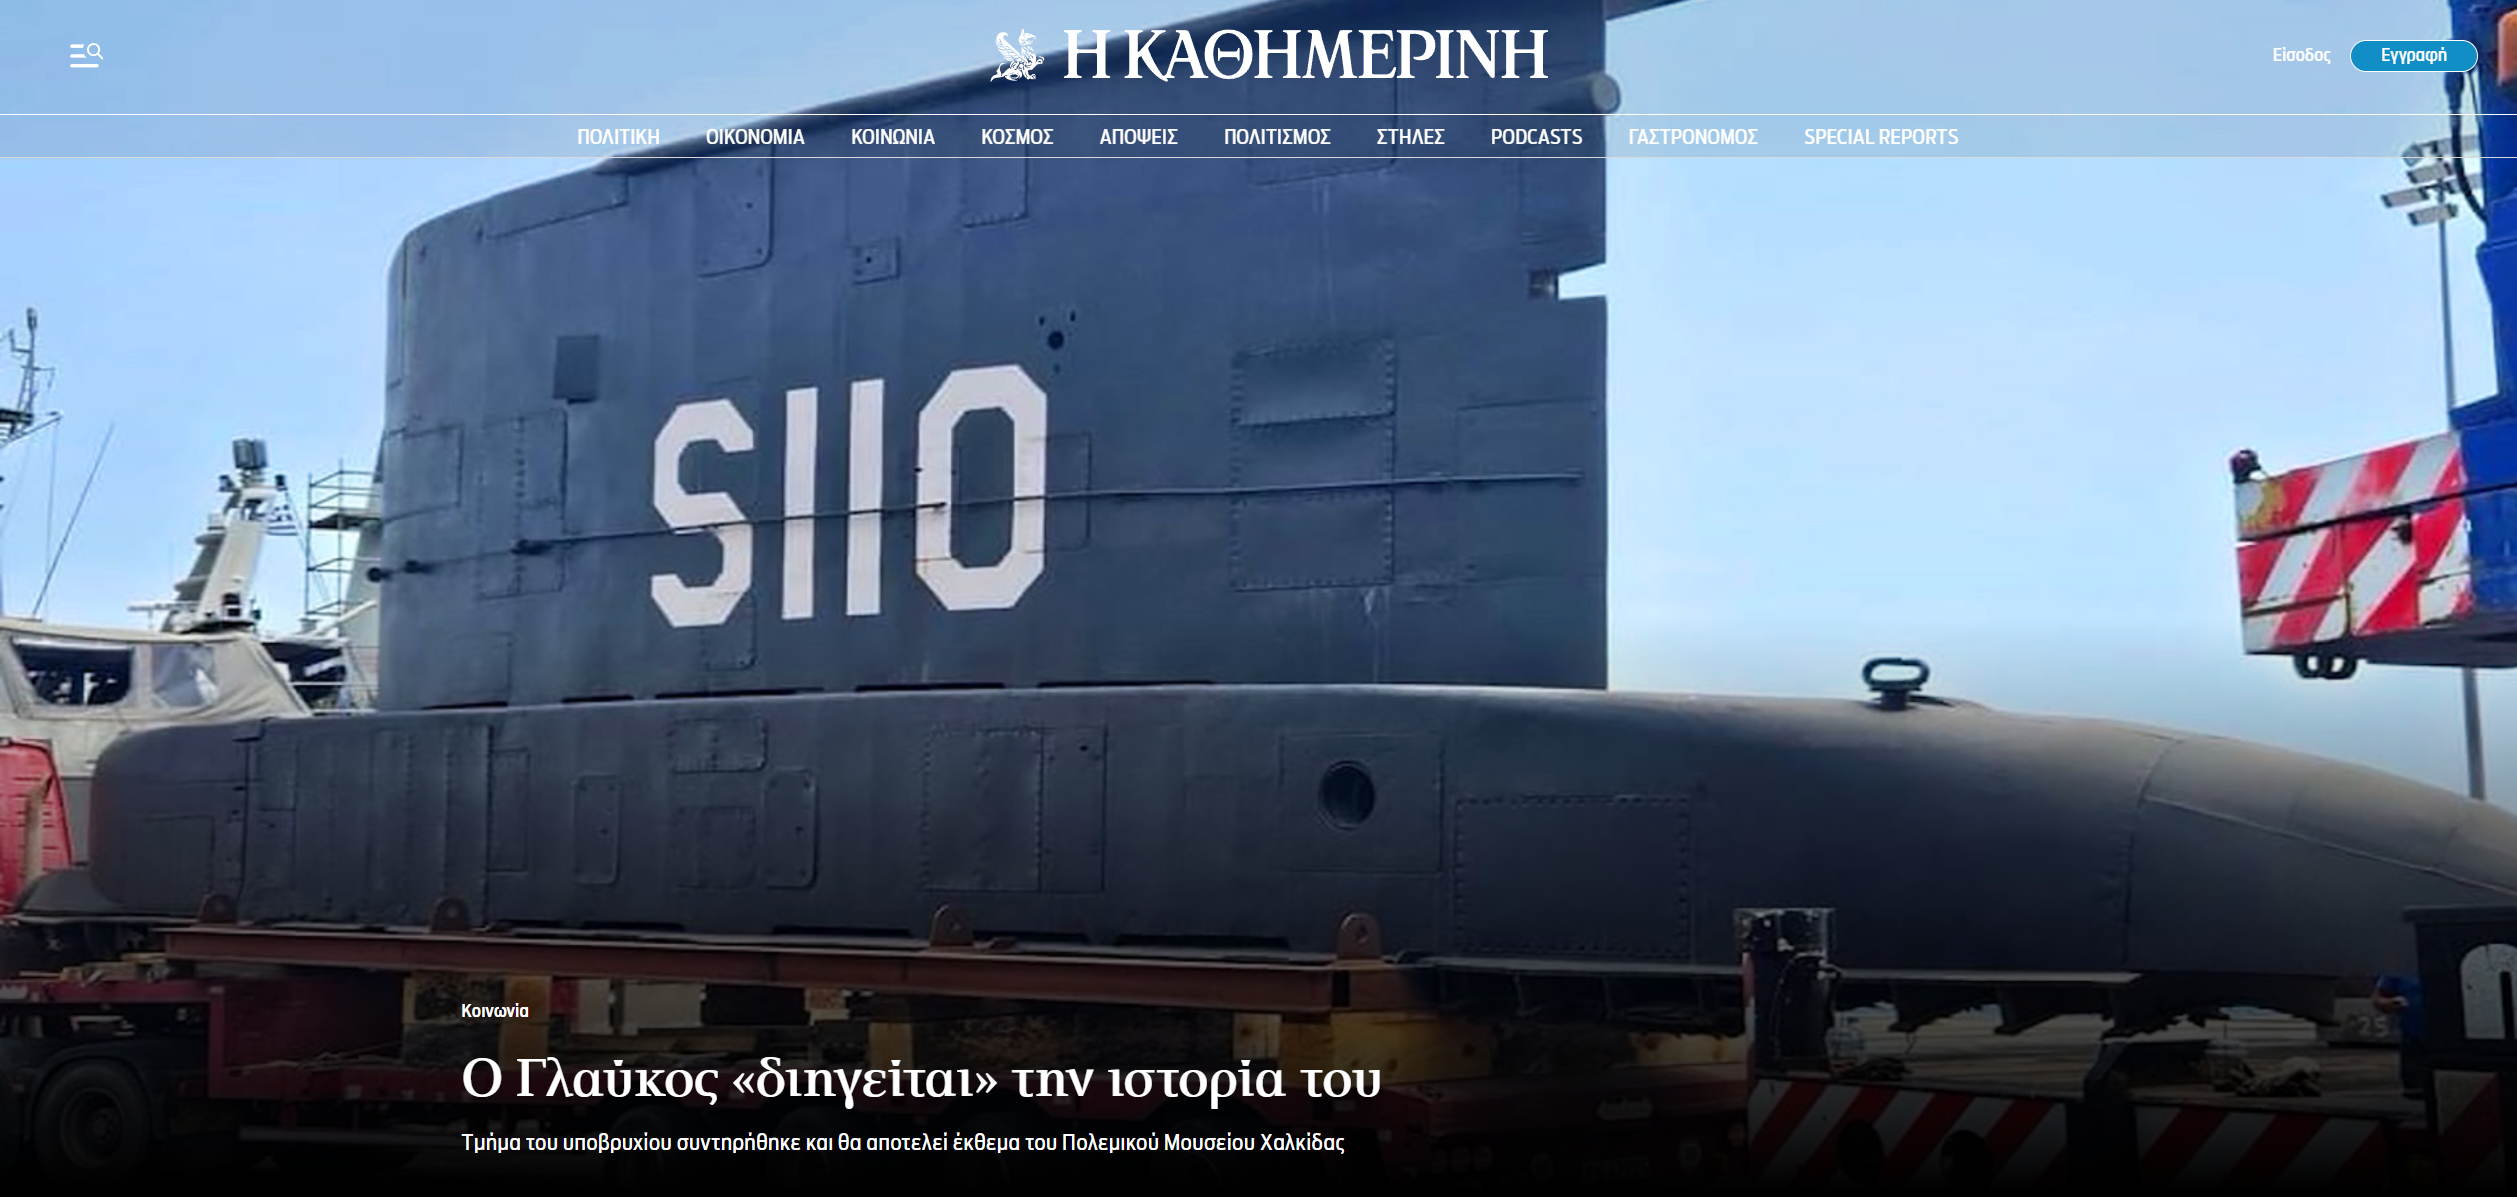 Τεράστια προσθήκη για το Πολεμικό Μουσείο Χαλκίδας! Σε έκθεση τμήμα του υποβρυχίου “Γλαύκος”